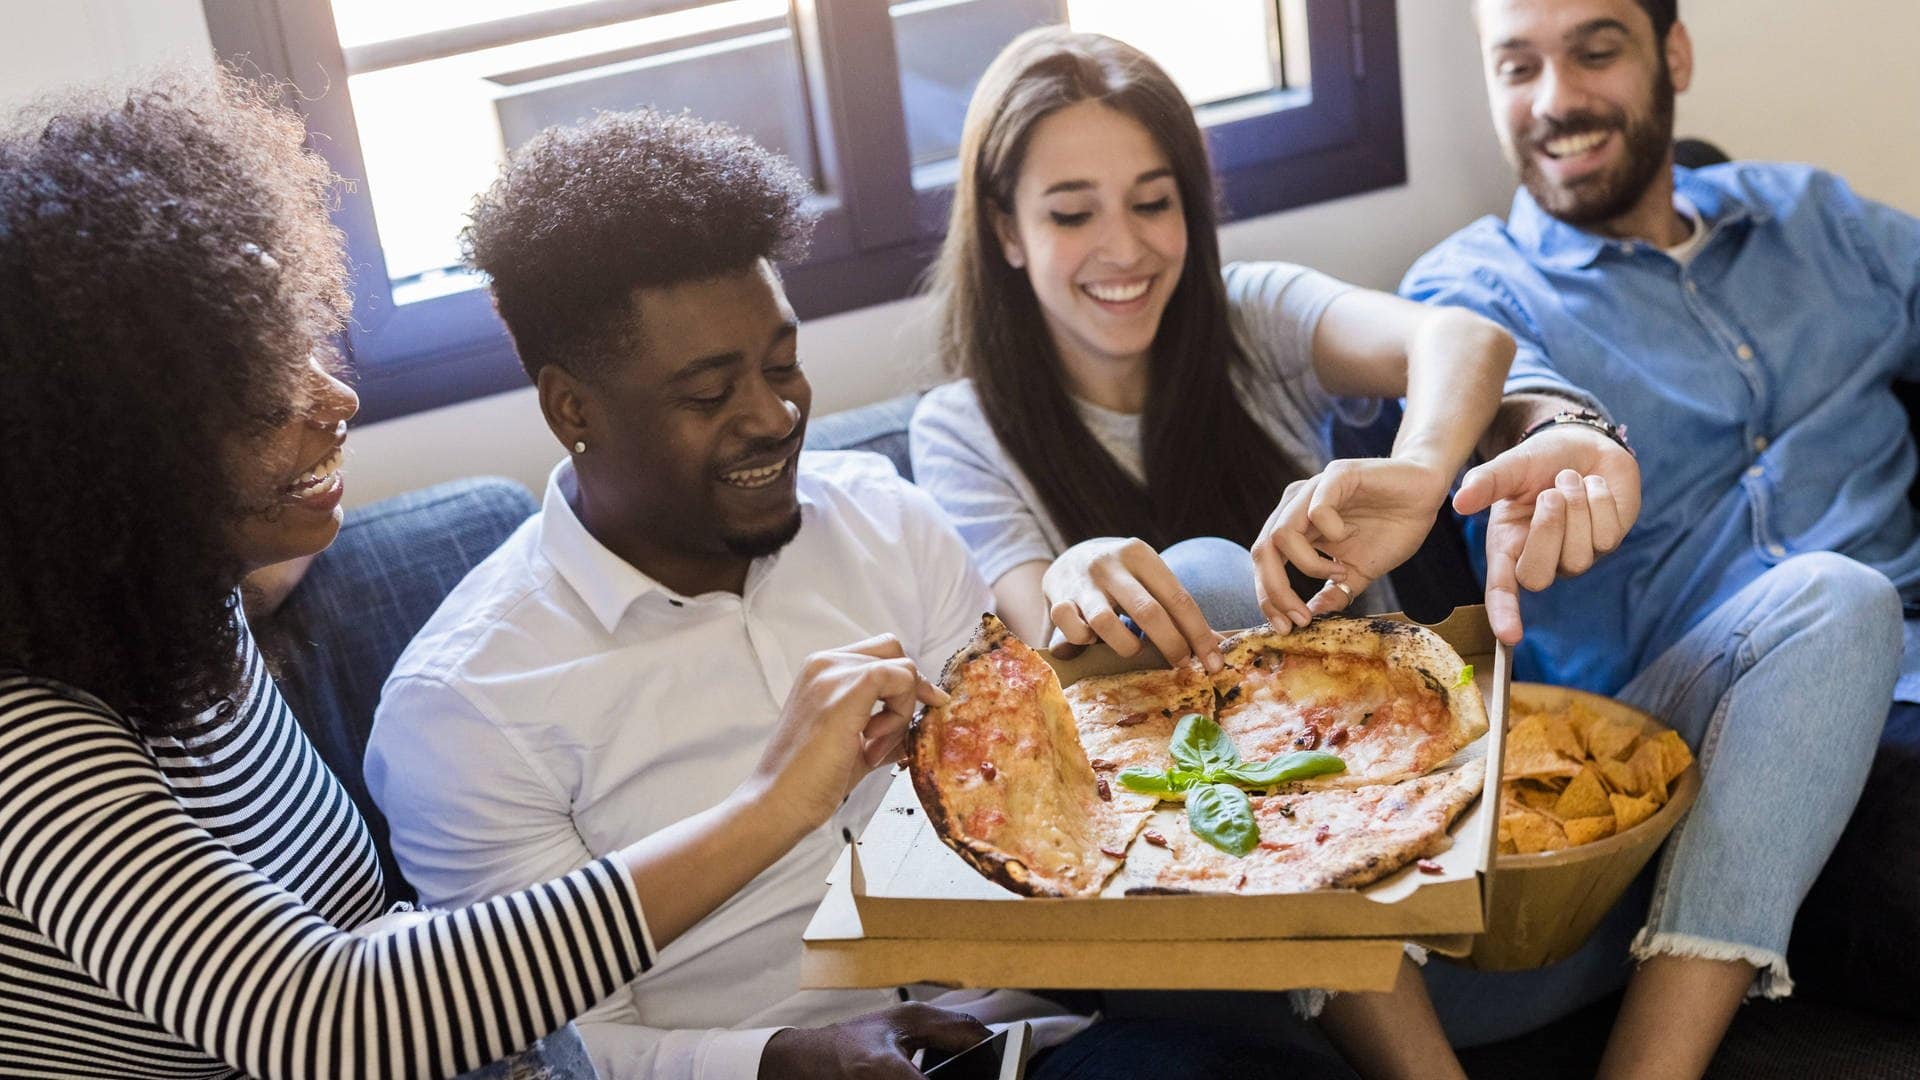 4 Leute, möglicherweise Partner, sitzen auf einem Sofa in einer Wohnung nach dem Einziehen und teilen sich eine Pizza, die in der Mitte gehalten wird.